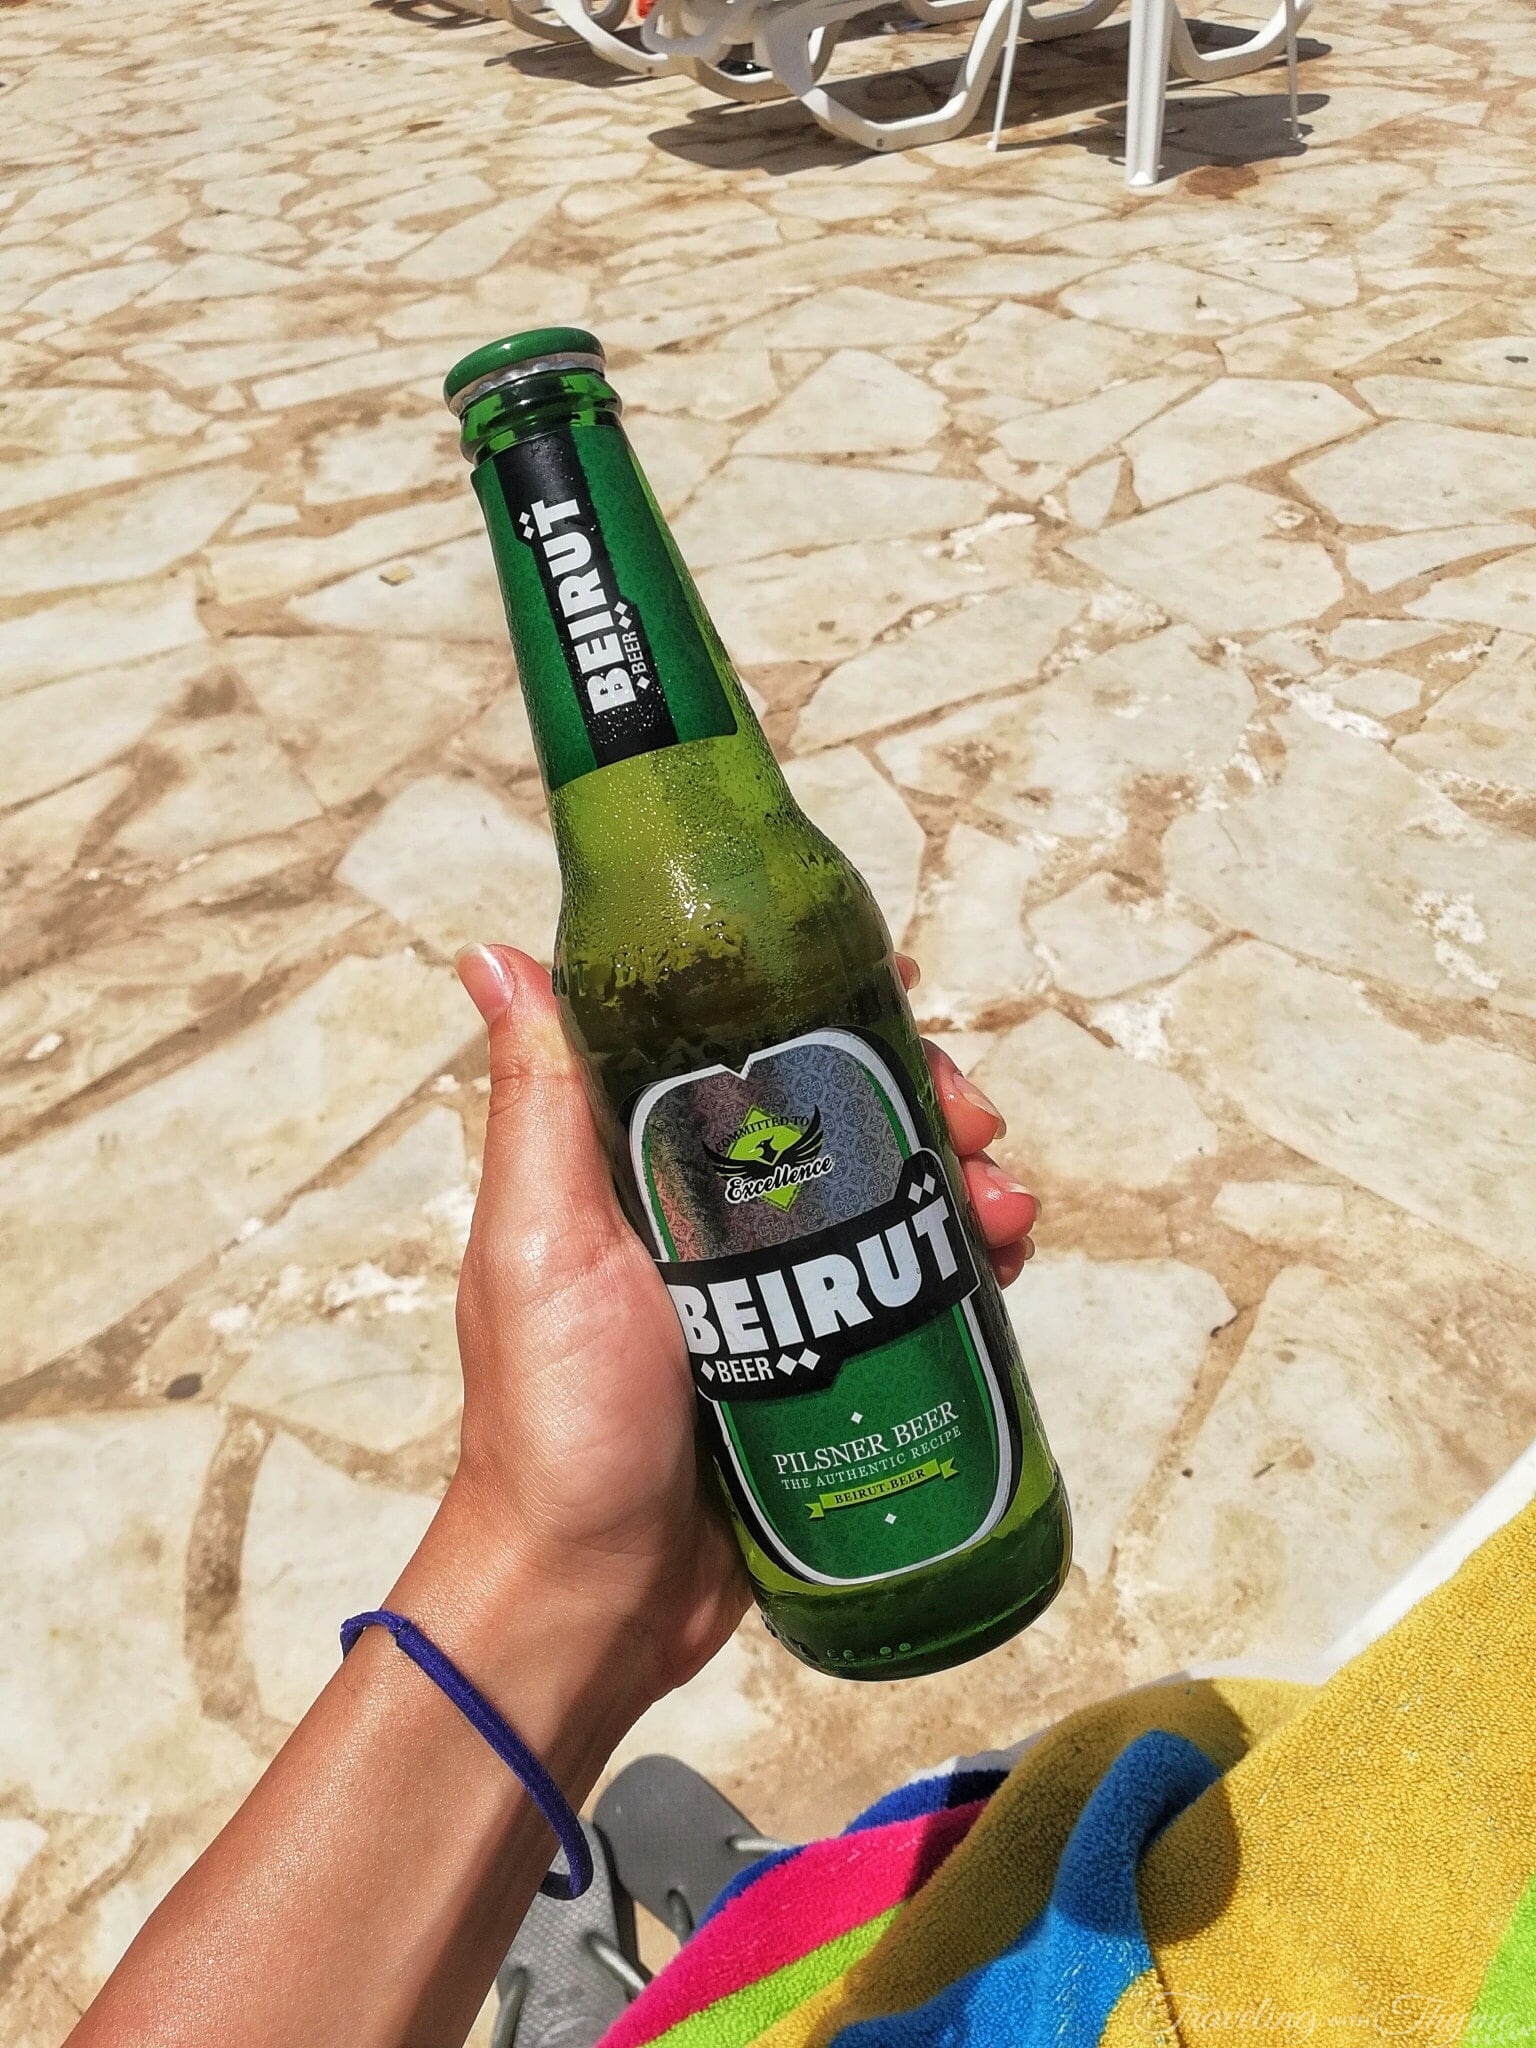 Senses Kaslik Pool Beach Beirut Beer